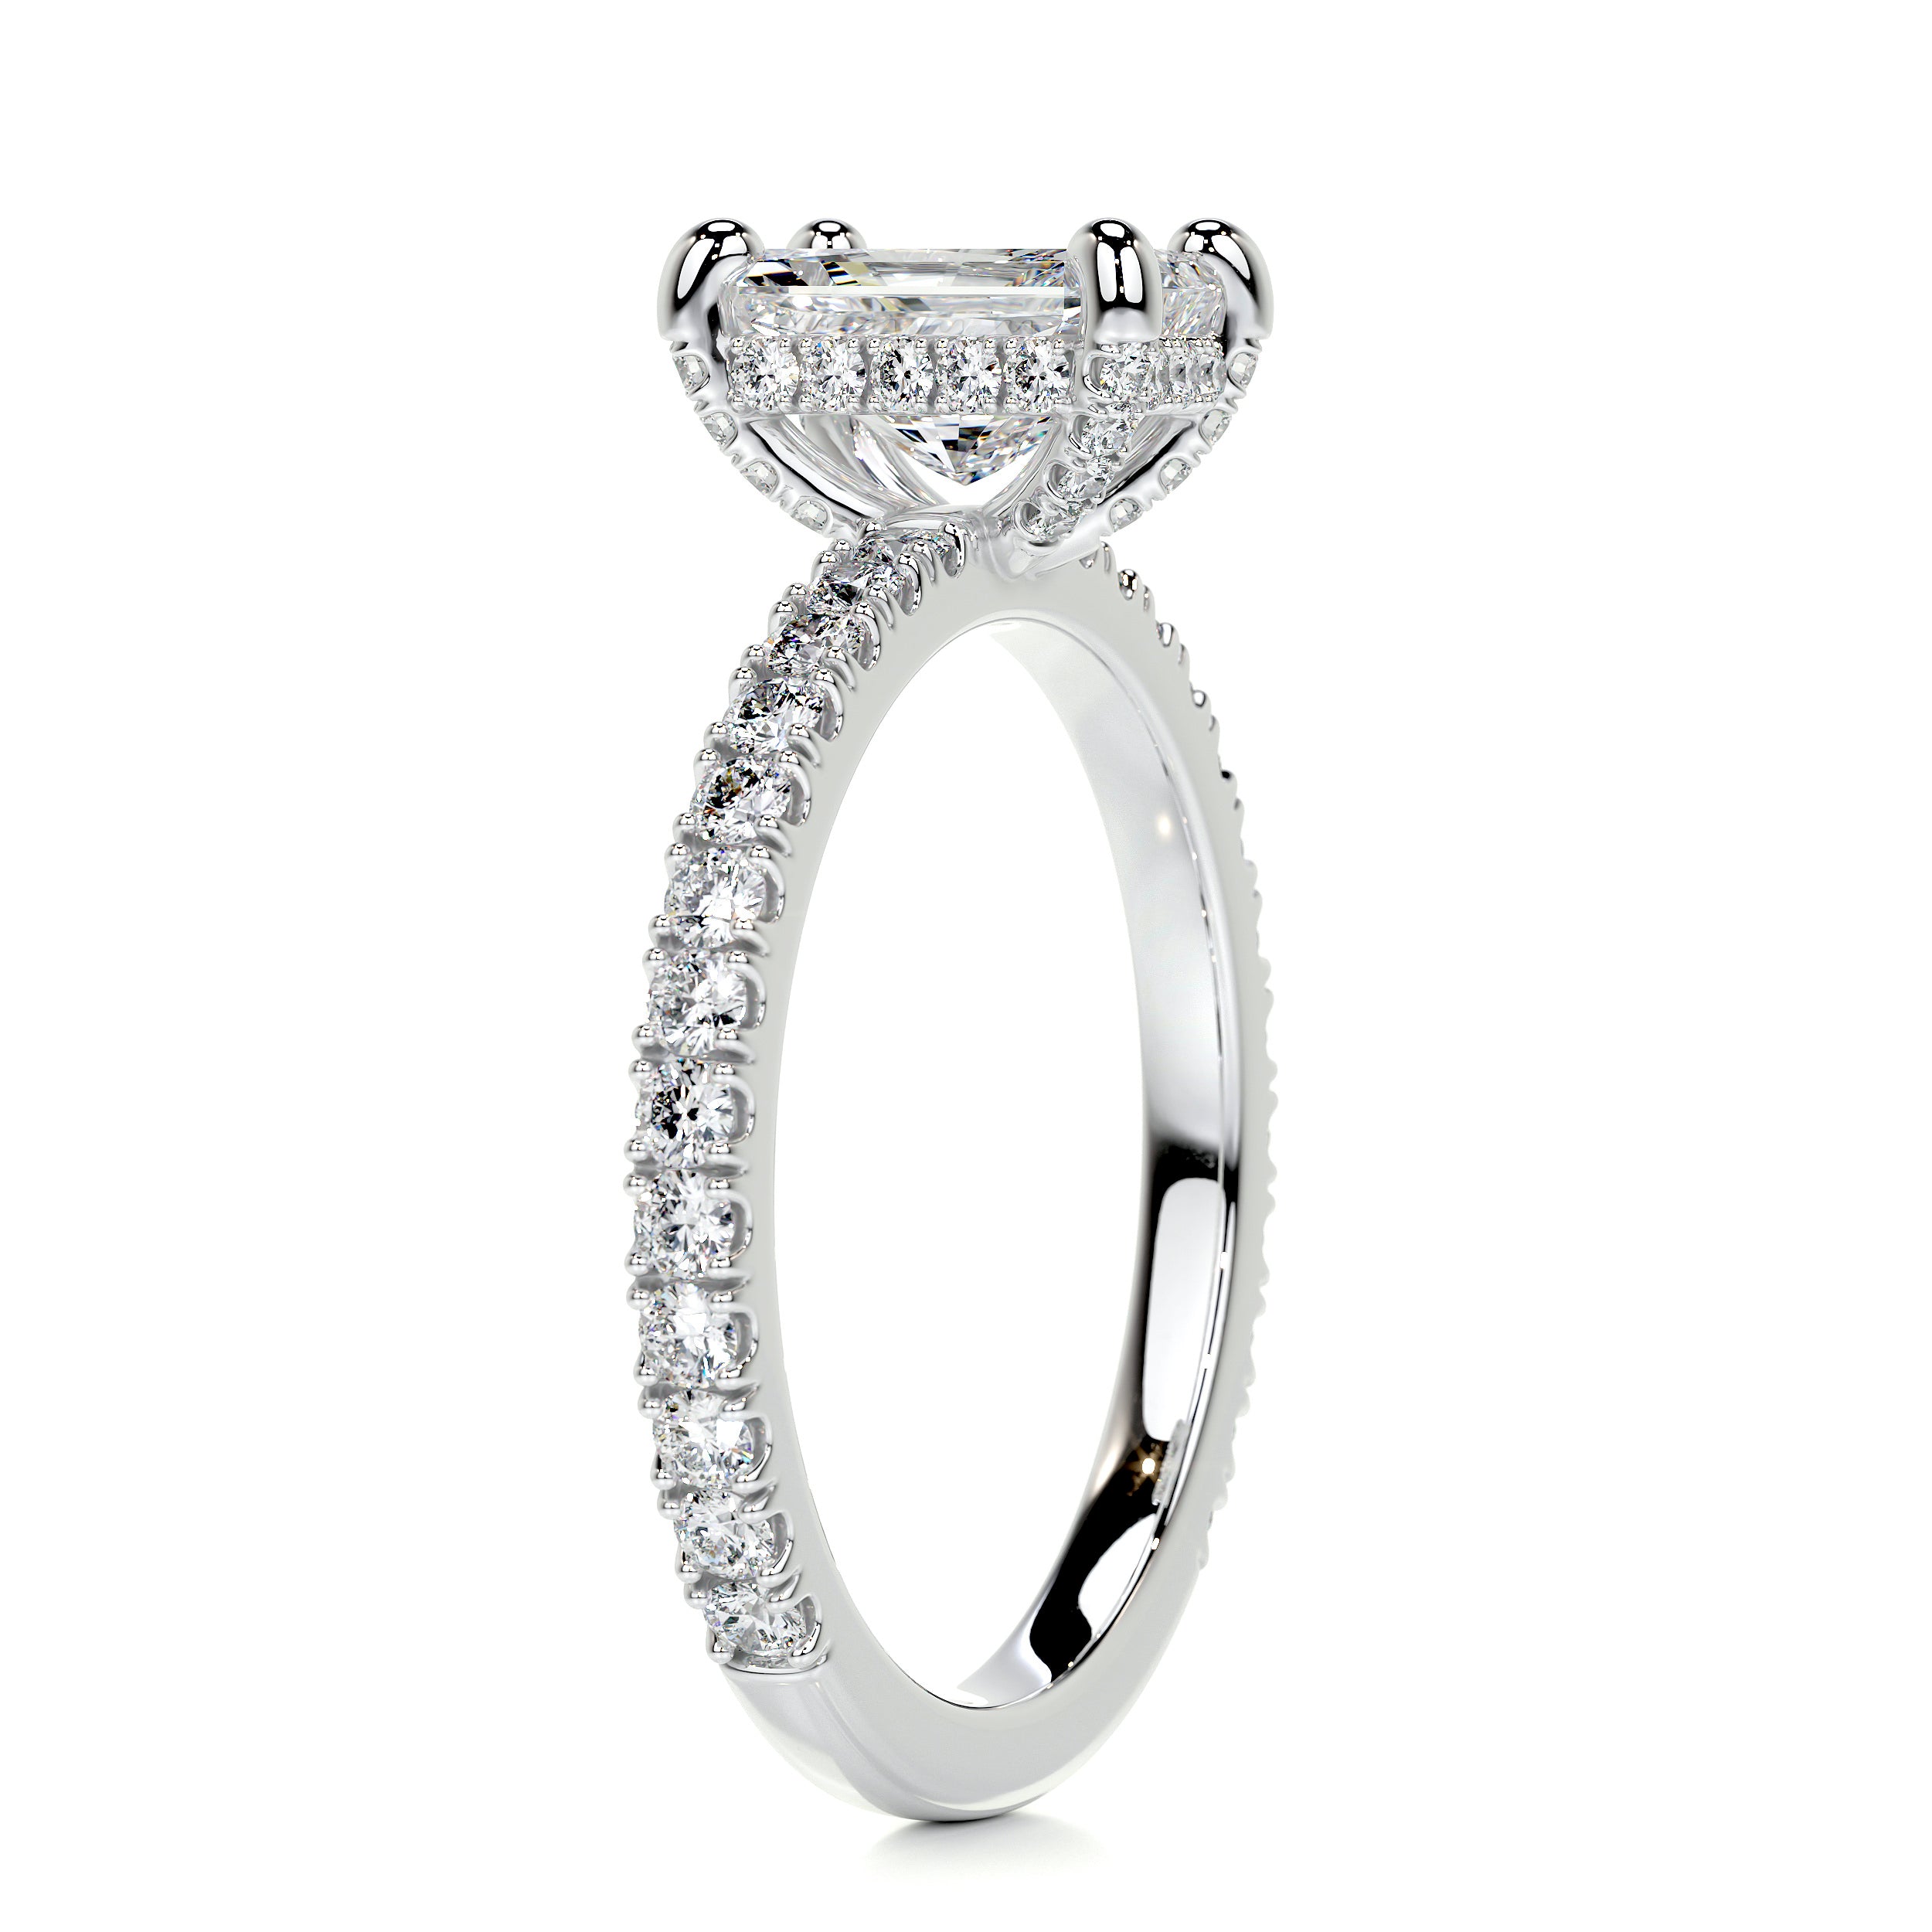 Deborah Diamond Engagement Ring   (1.5 Carat) -14K White Gold